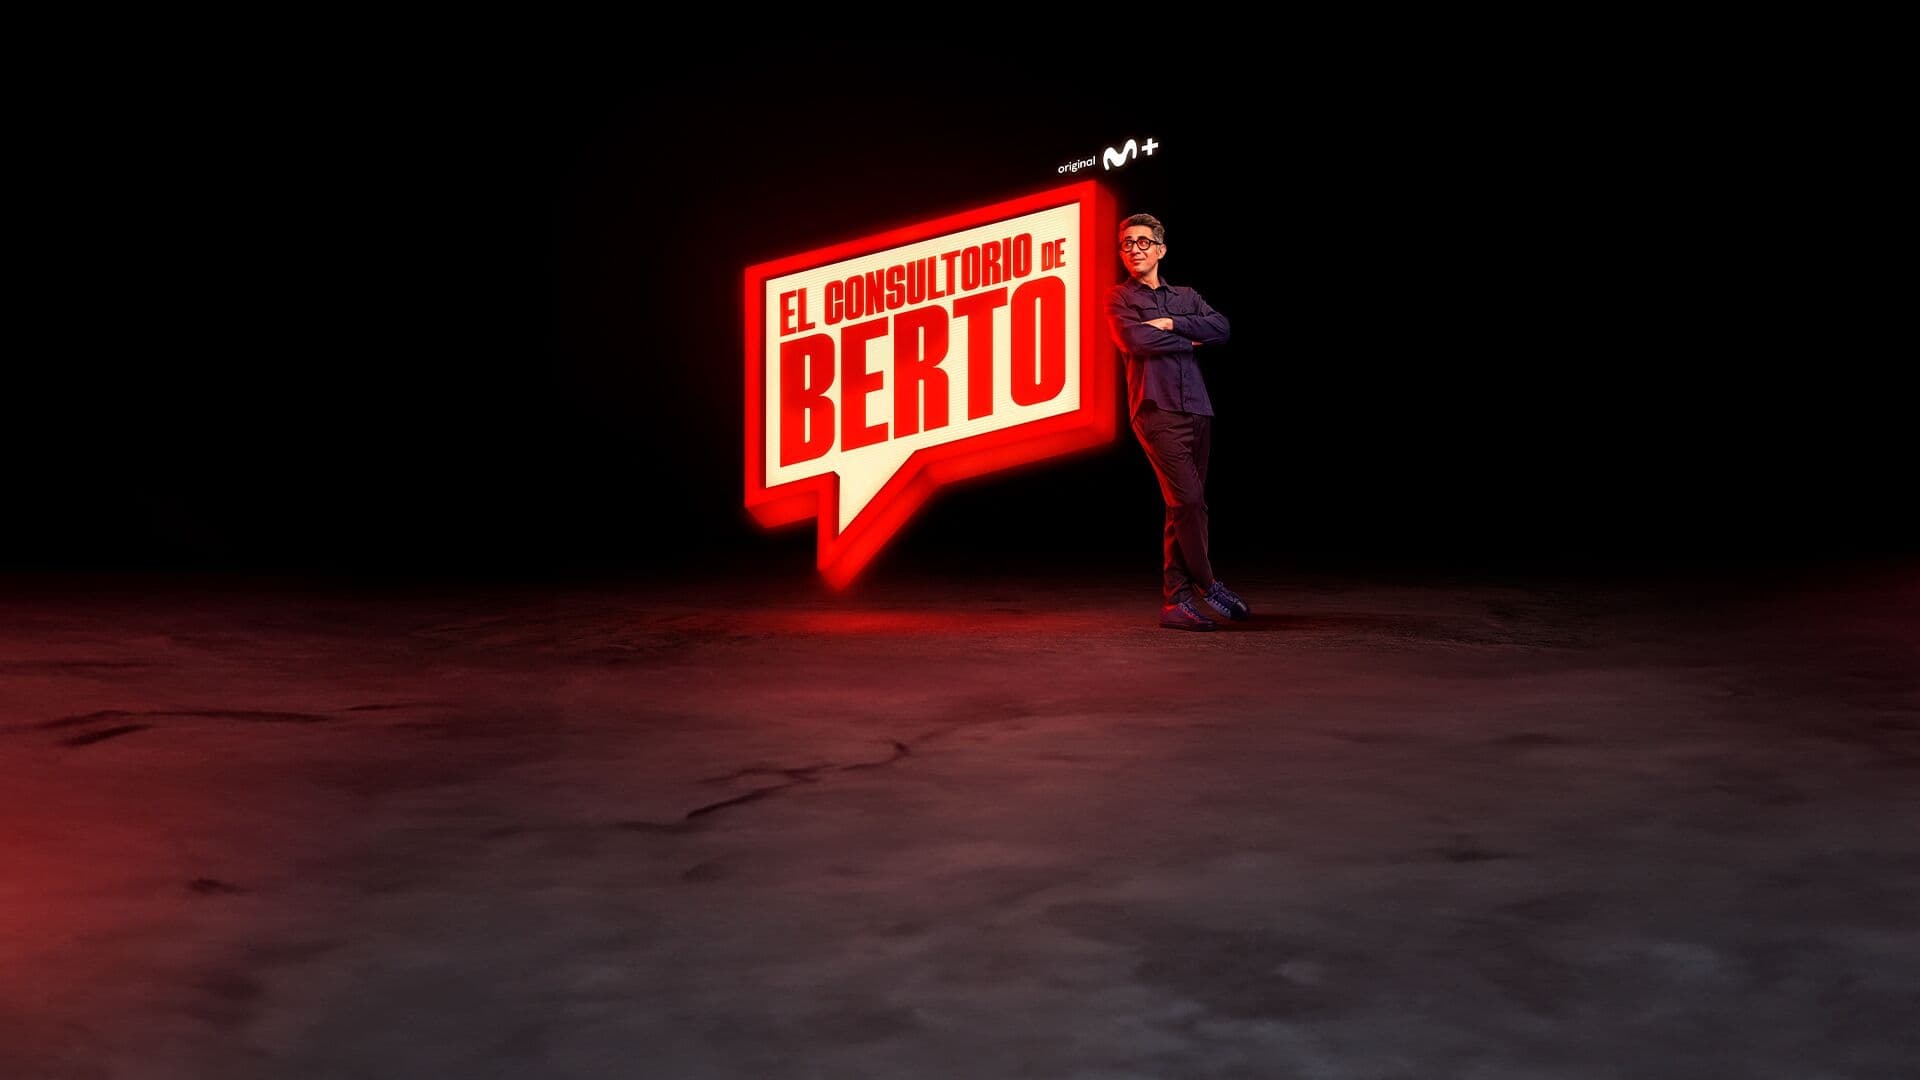 El consultorio de Berto